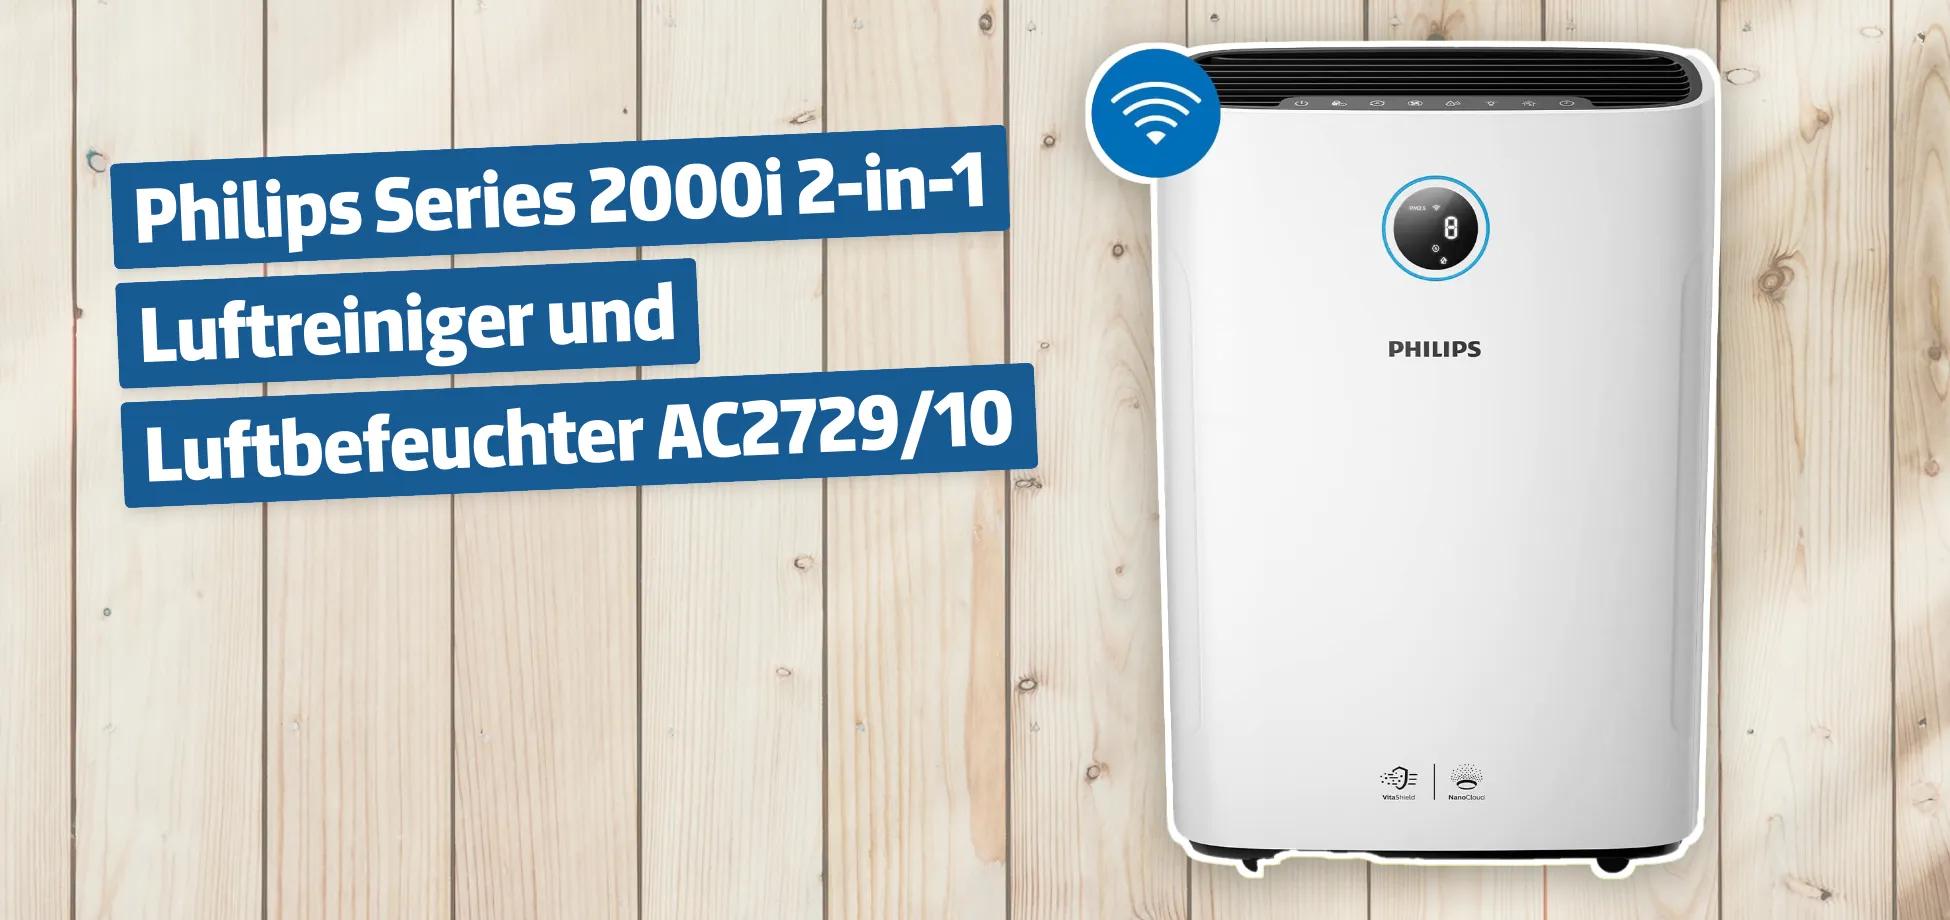 Philips Series 2000i 2-in-1 Luftreiniger und Luftbefeuchter AC2729/10